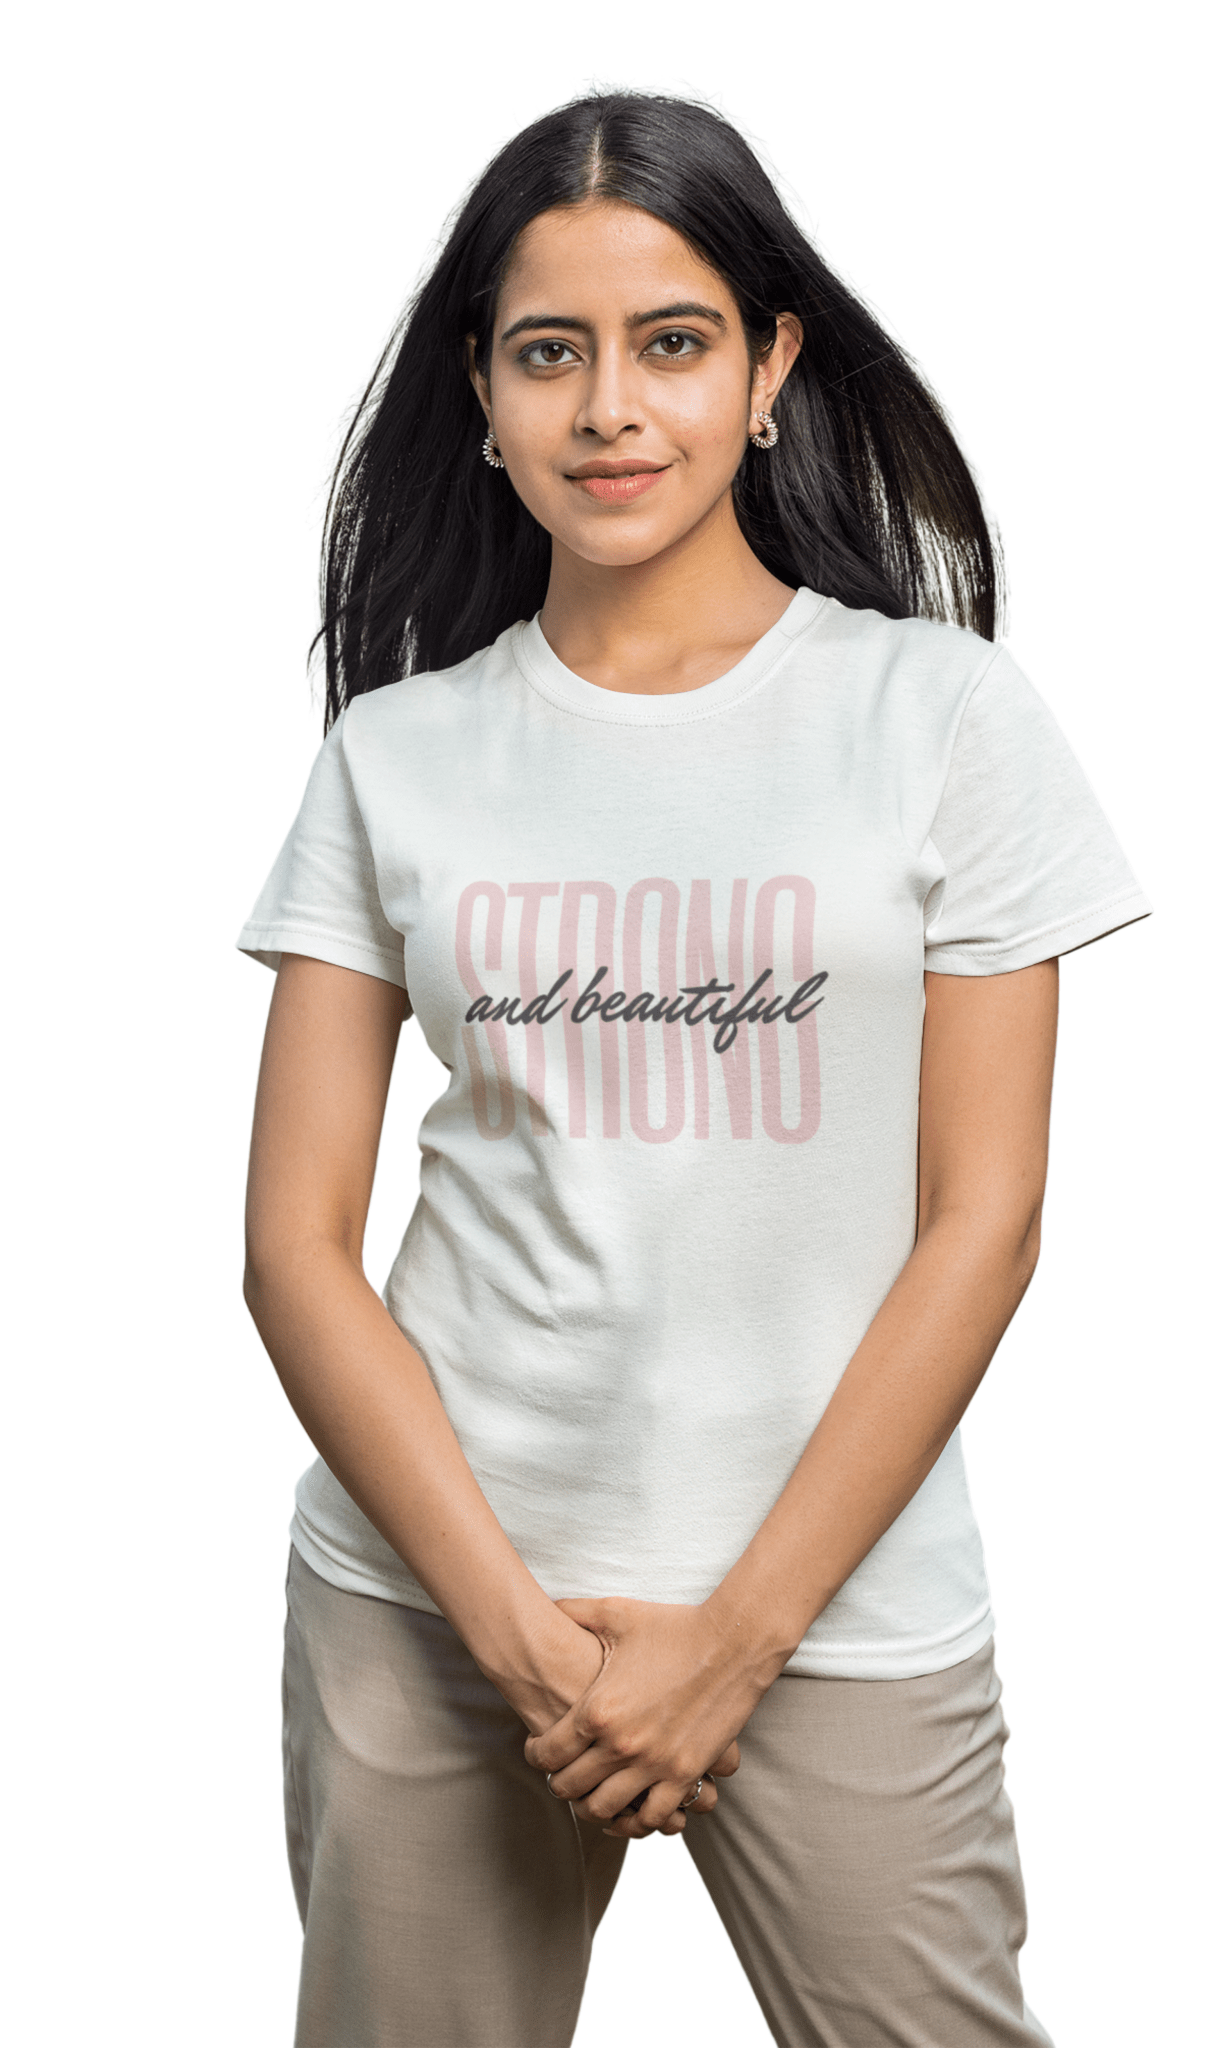 Strong Regular Women's T-Shirt - Hush and Wear